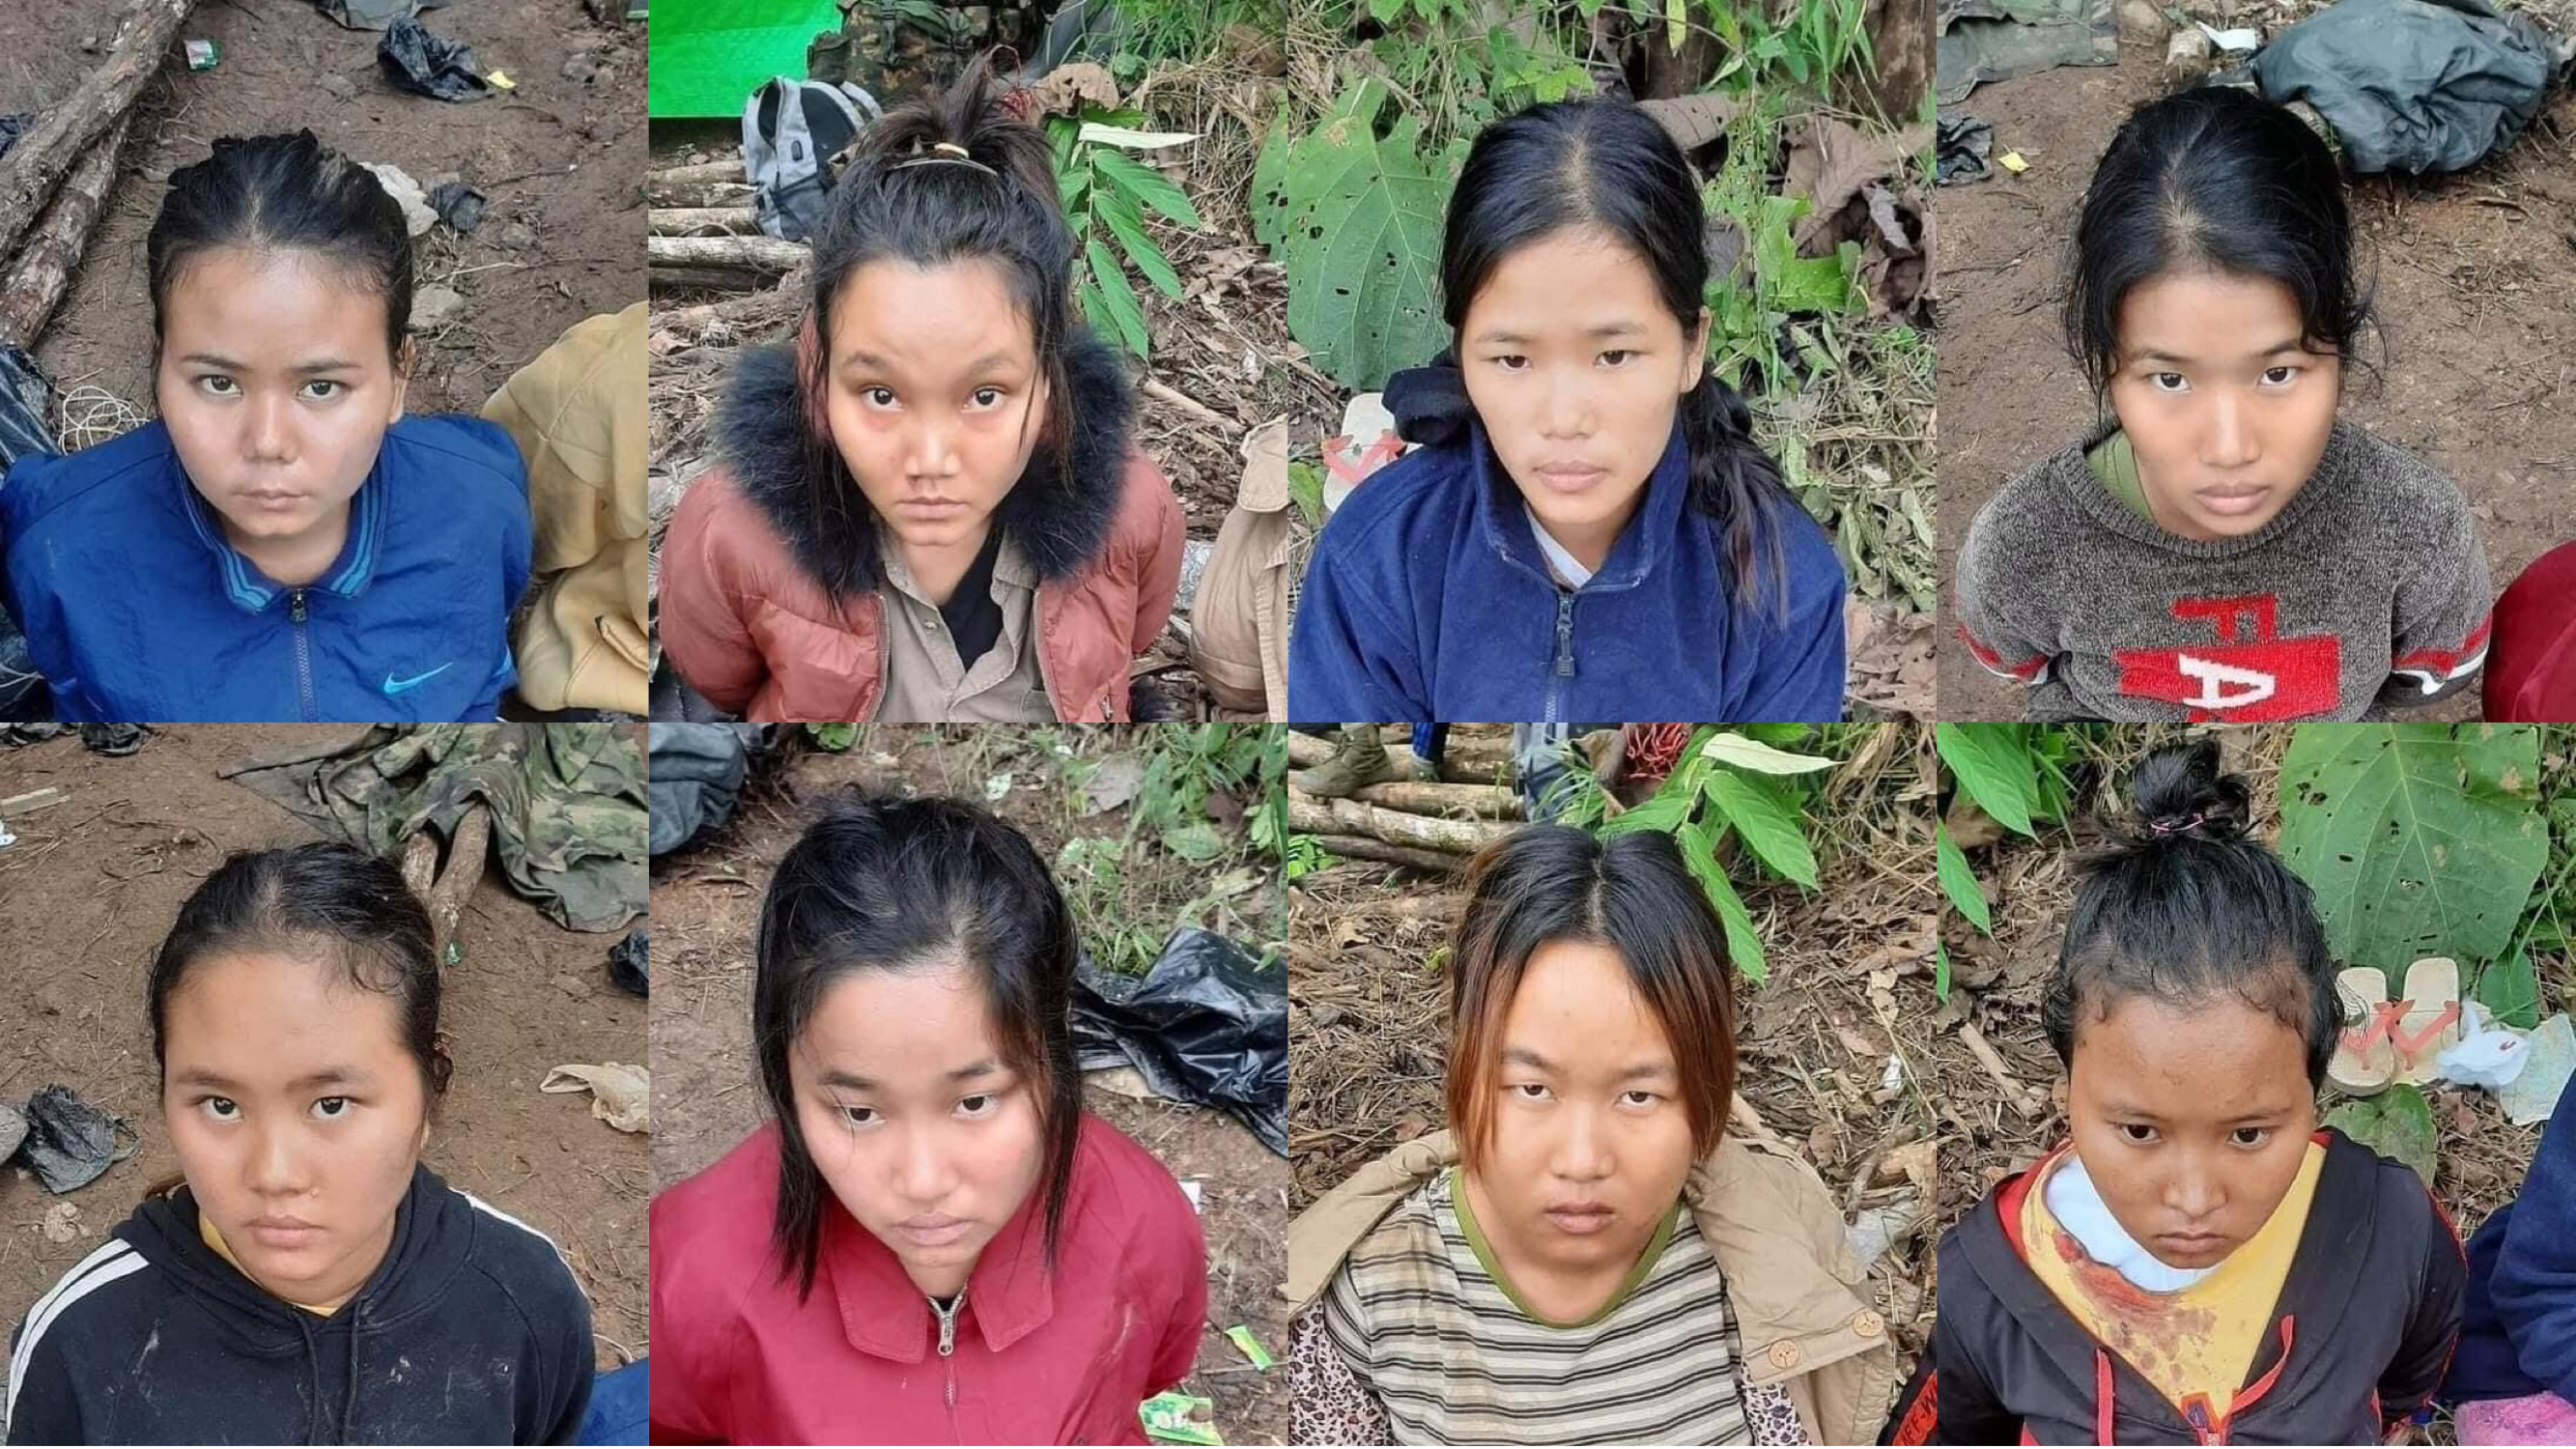  지난주 칼레이에서 체포된 여성들, 대부분 학생들이다. 주민들은 이들이 시민군의 공격을 막기위한 인간방패로 동원됐다고 전했다. 백렘친(23)과 시민군 셰르 탕 푸이아(27), 람 마위아(26)는 숨진 채 발견됐다. 이들의 사진은 한국에서 미얀마 민주화를 지원하는 시민단체가 제공했다.